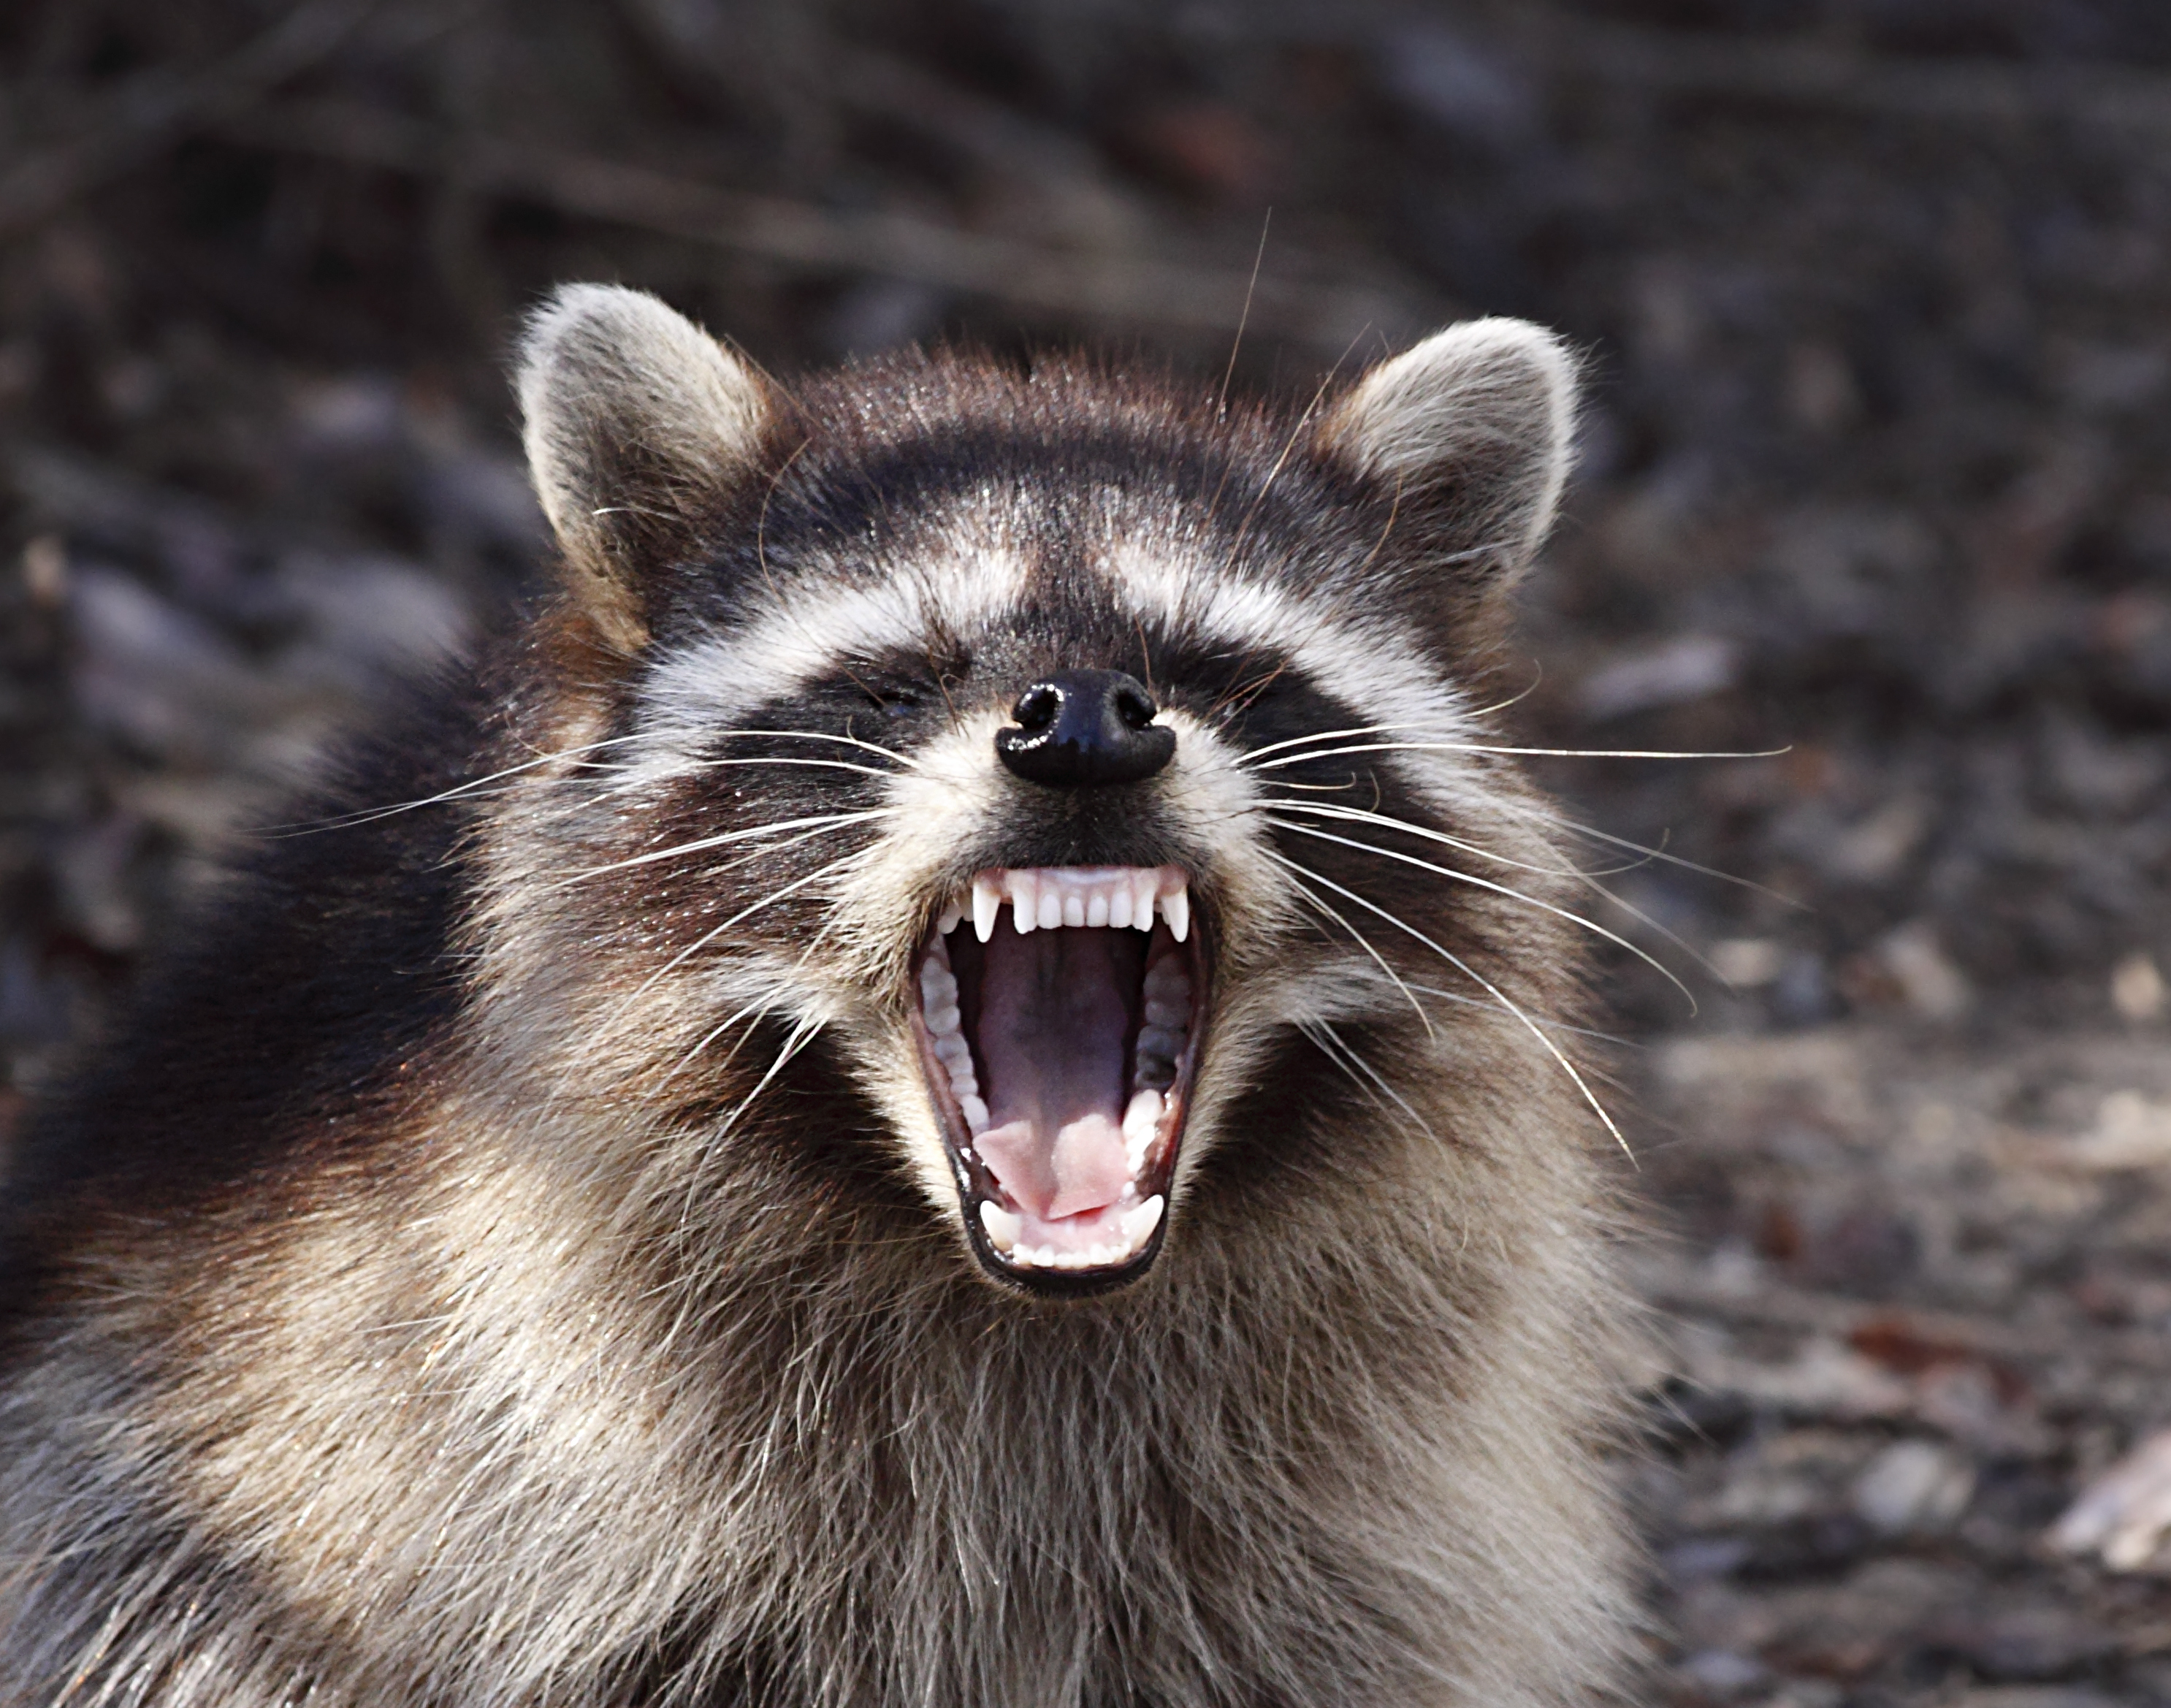 A raccoon showing its teeth